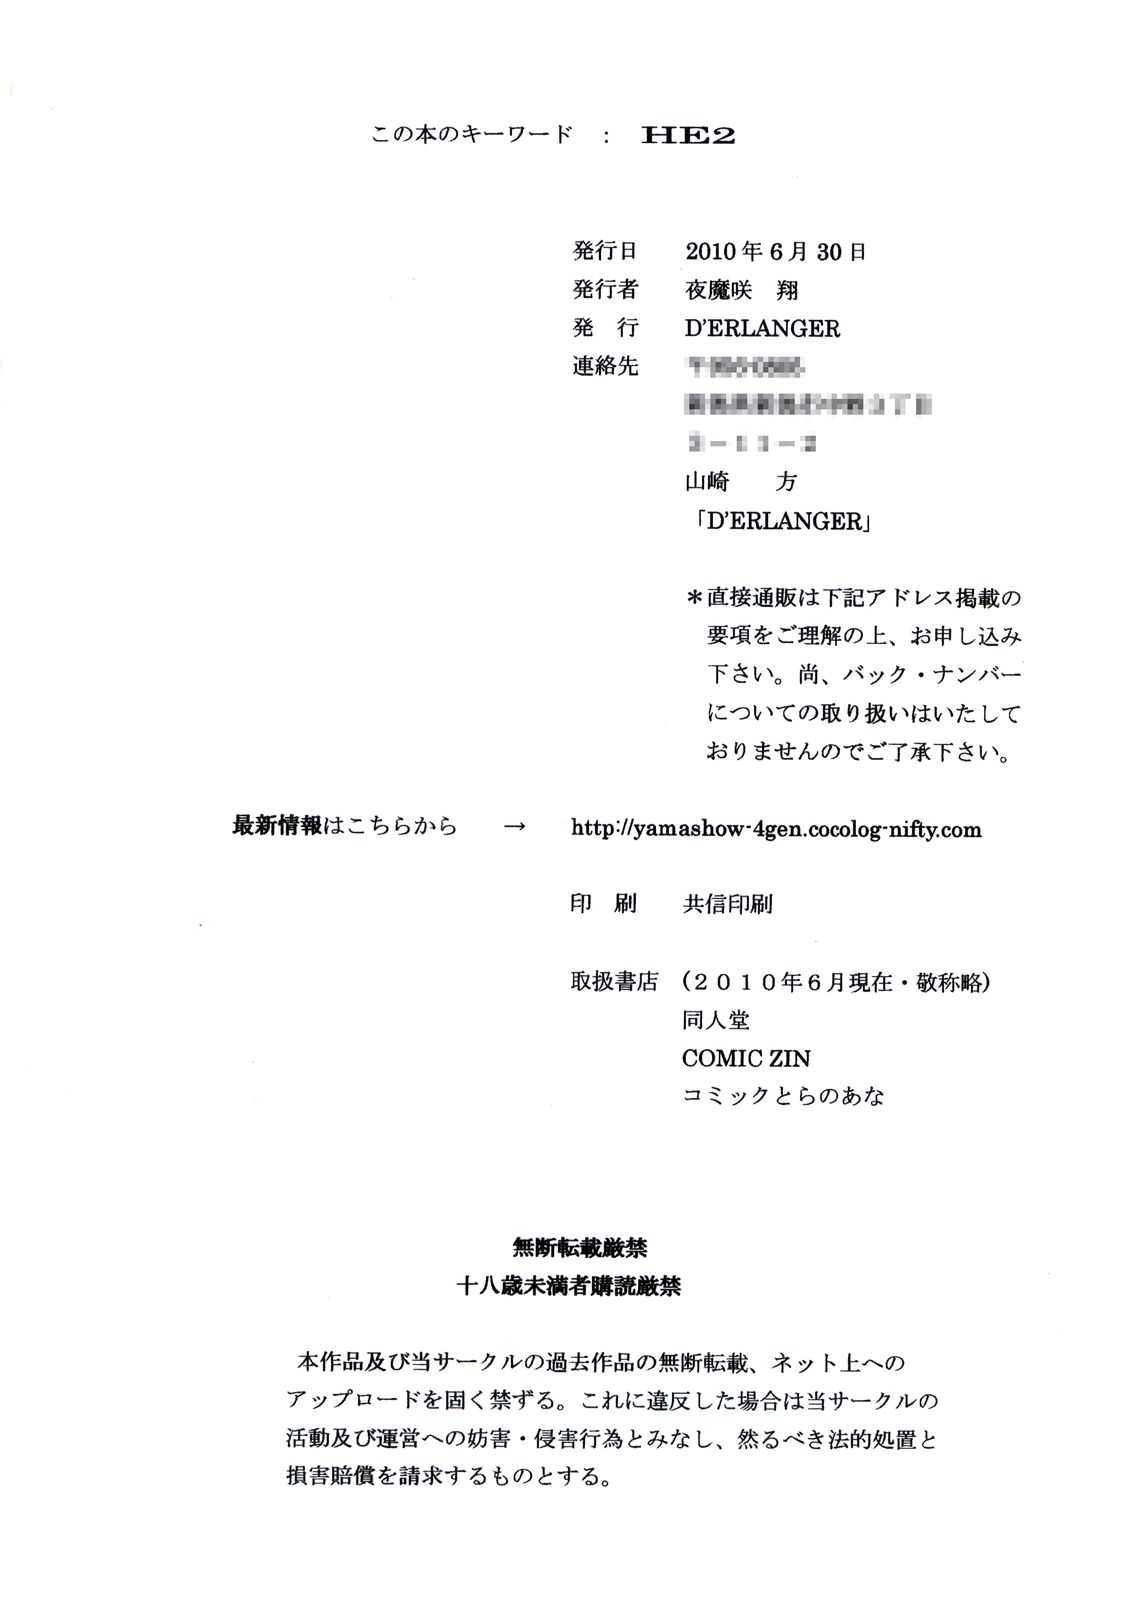 [D&#039;ERLANGER (Yamazaki Show)] Shame Play VOLUME:2 (Bakemonogatari) [D&#039;ERLANGER (夜魔咲翔)] Shame Play VOLUME：2 (化物語)